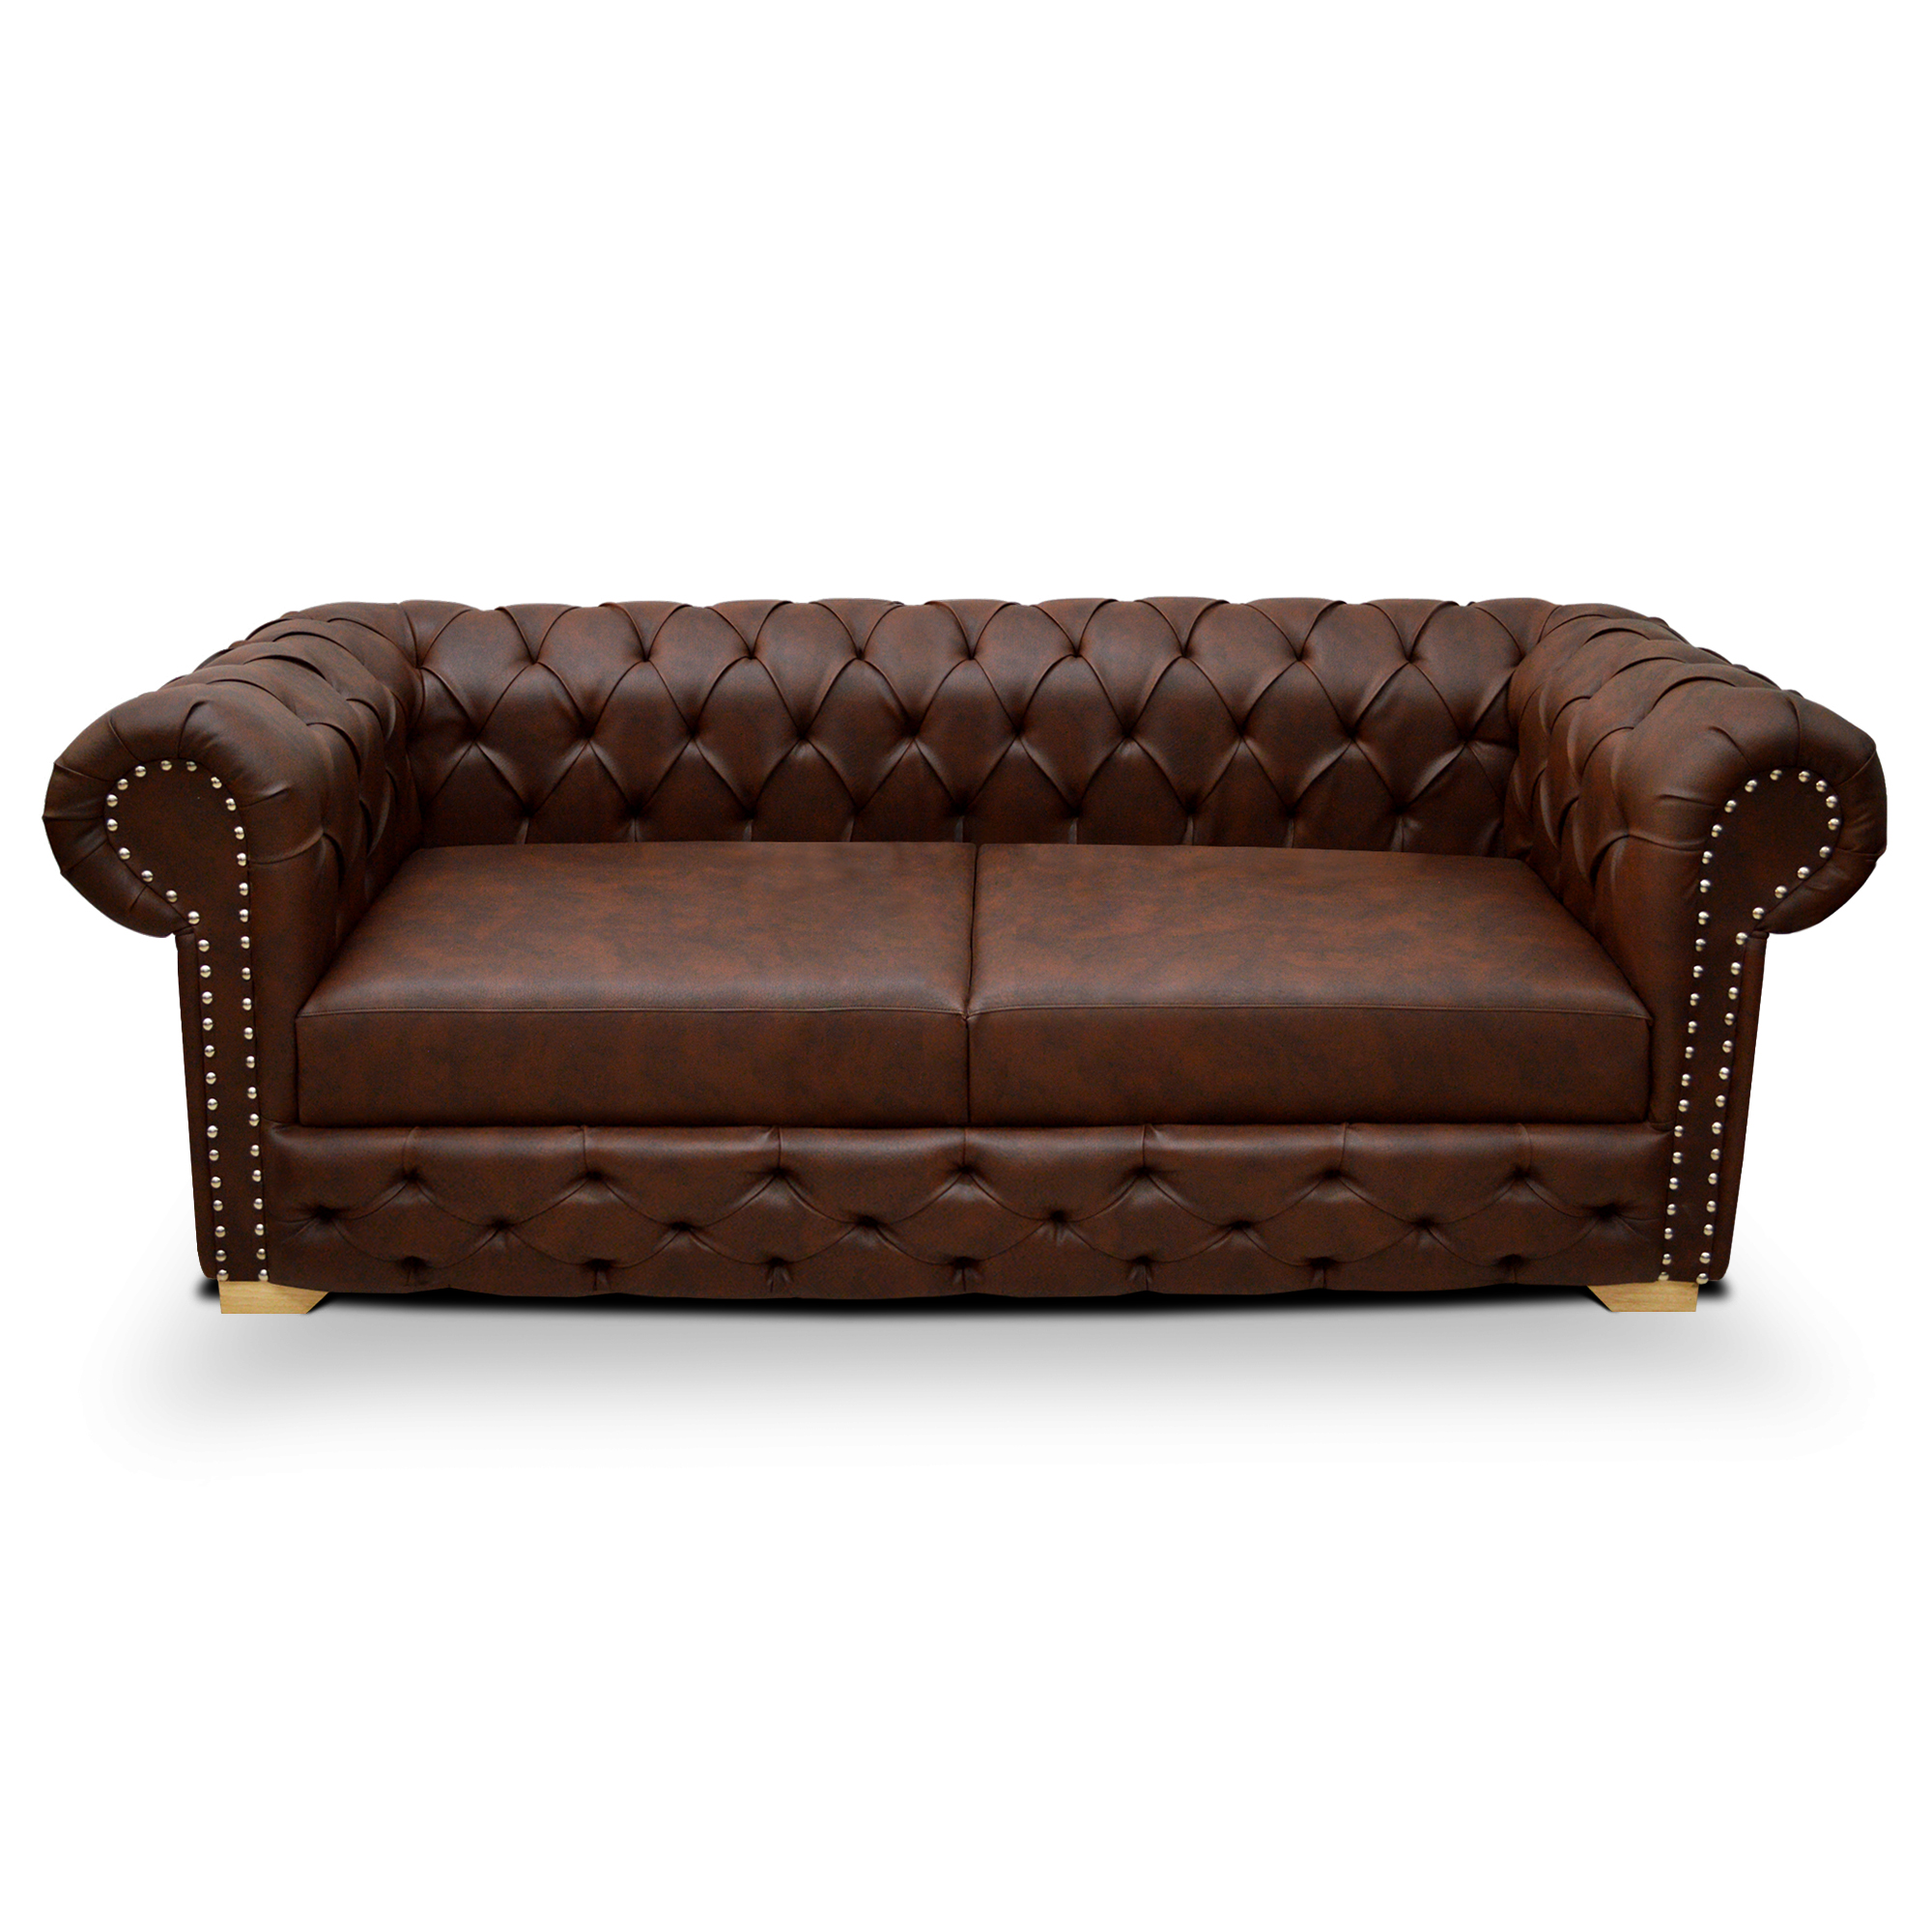 Sofa Chanty 3 Puestos Color Marron